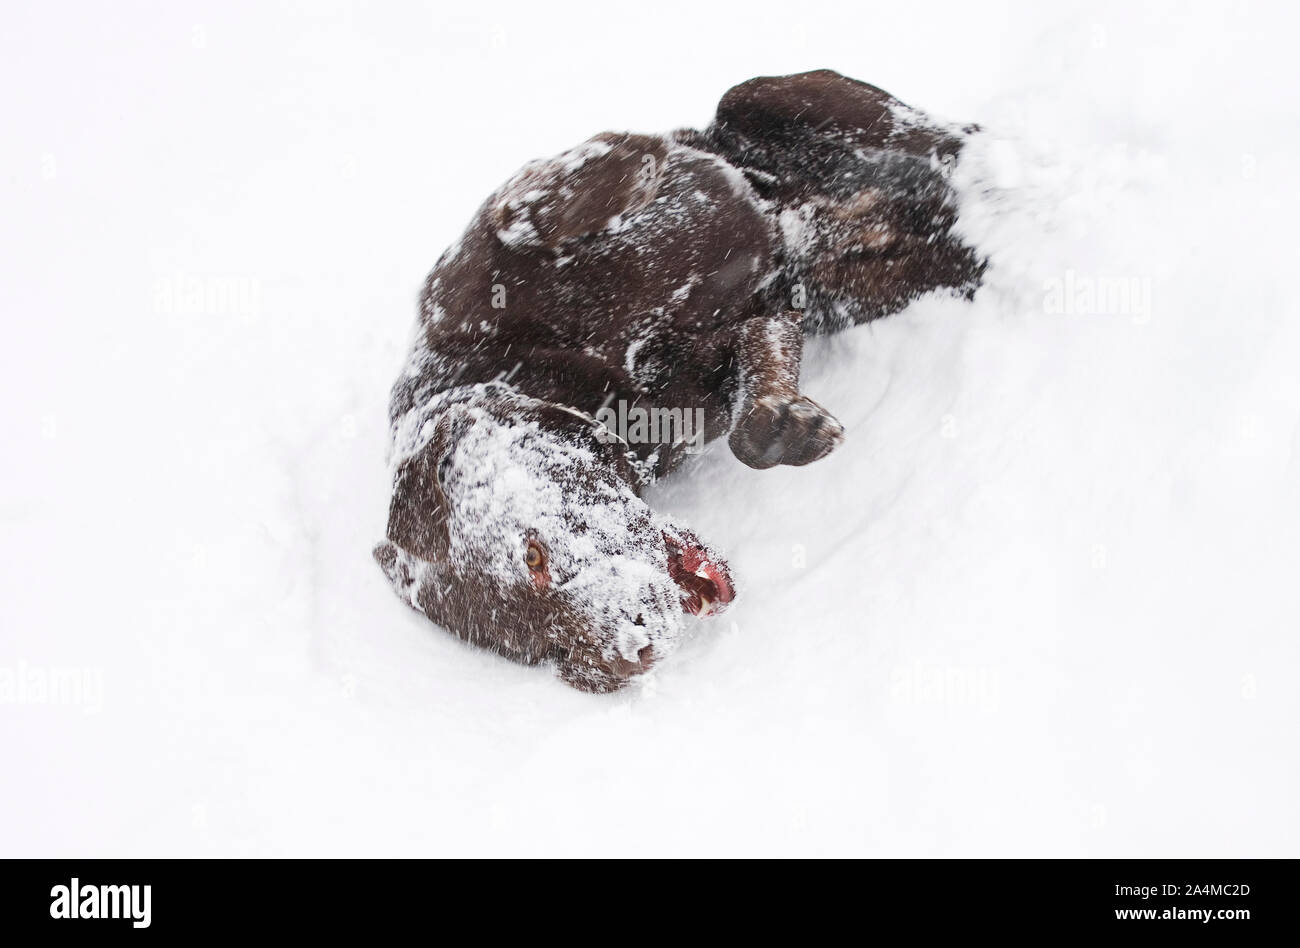 Cane a giocare nella neve Foto Stock